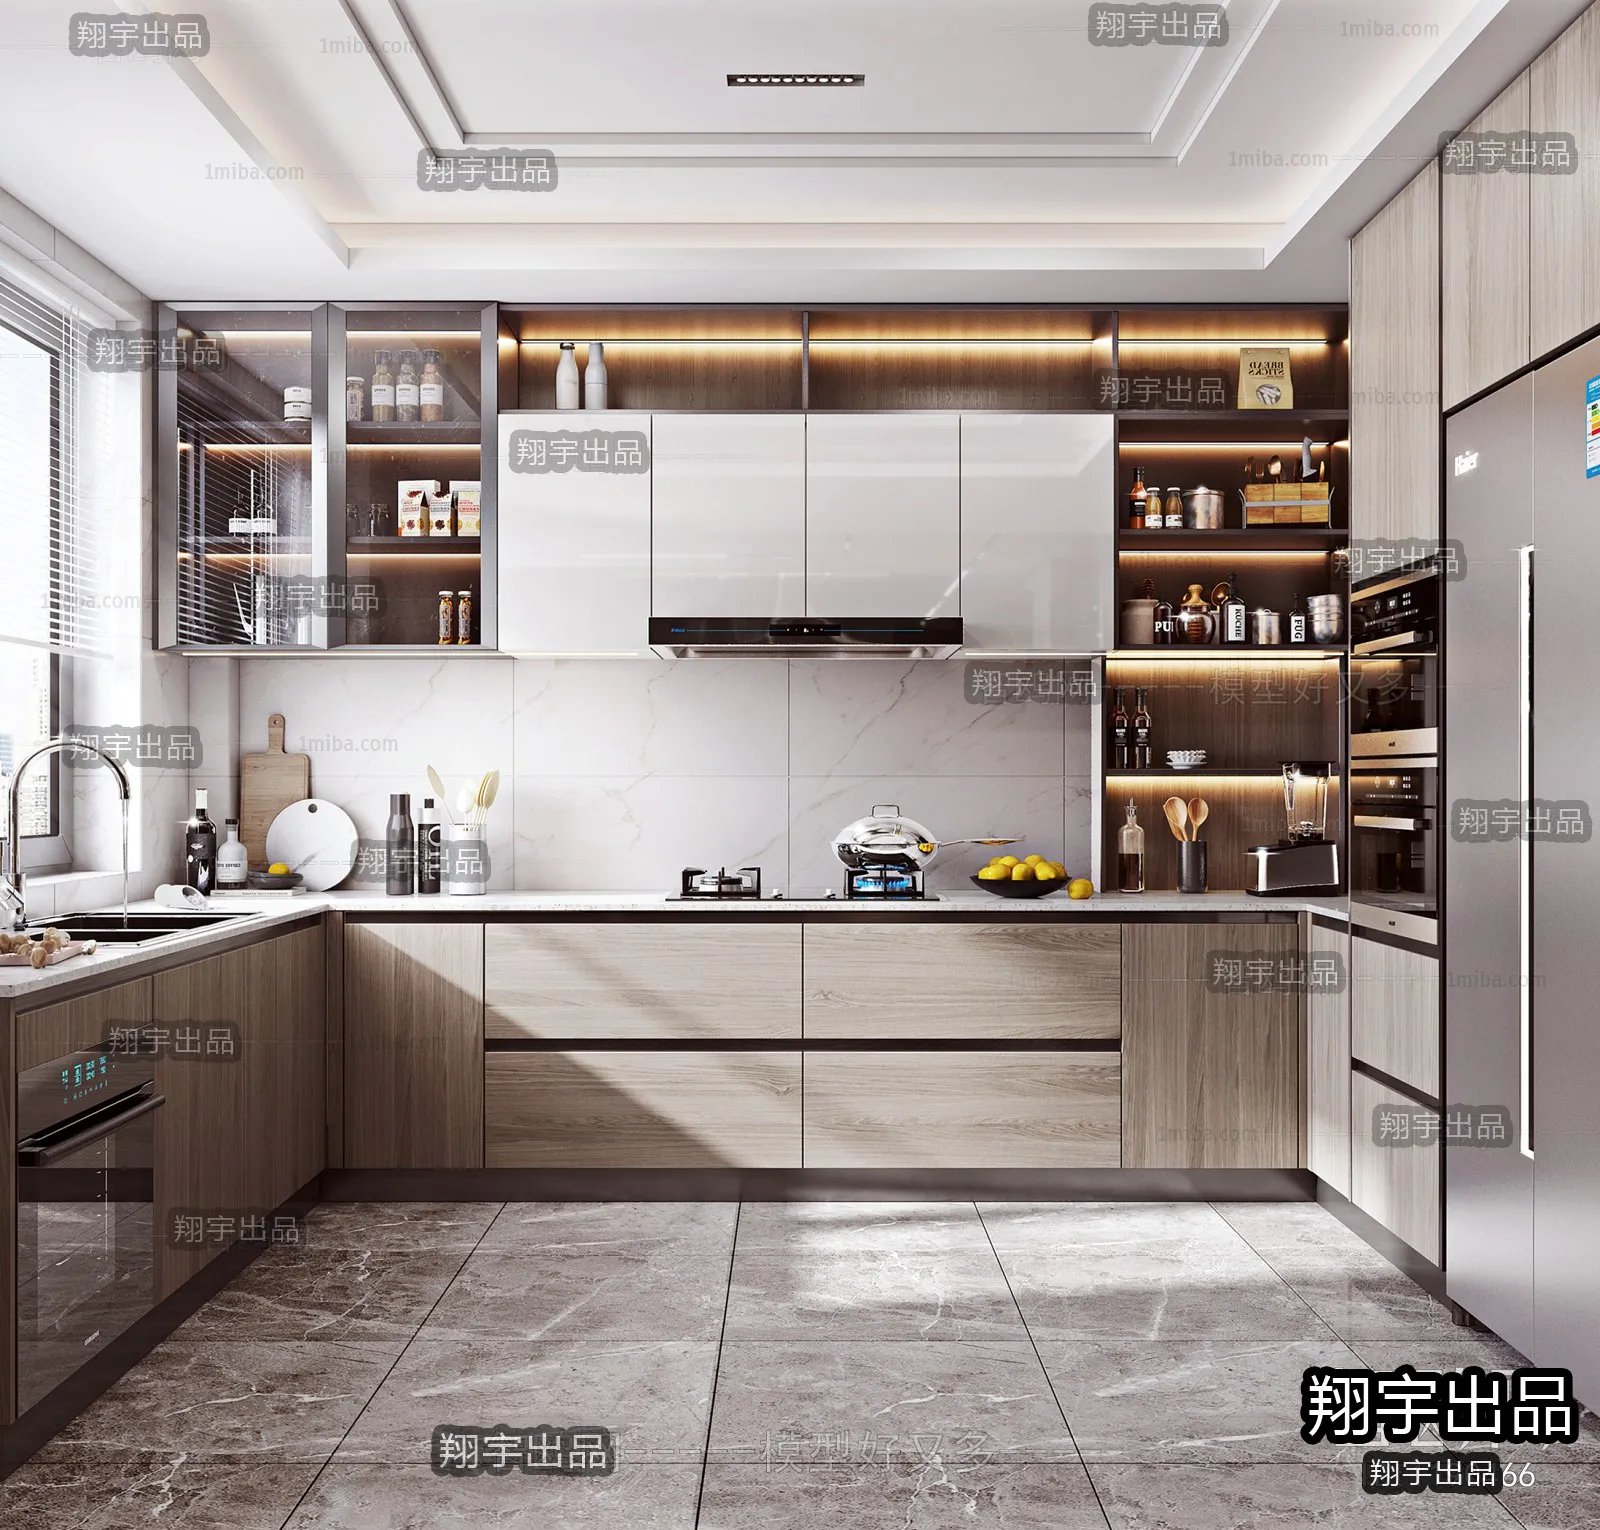 Kitchen – Modern Interior Design – 3D Models – 021